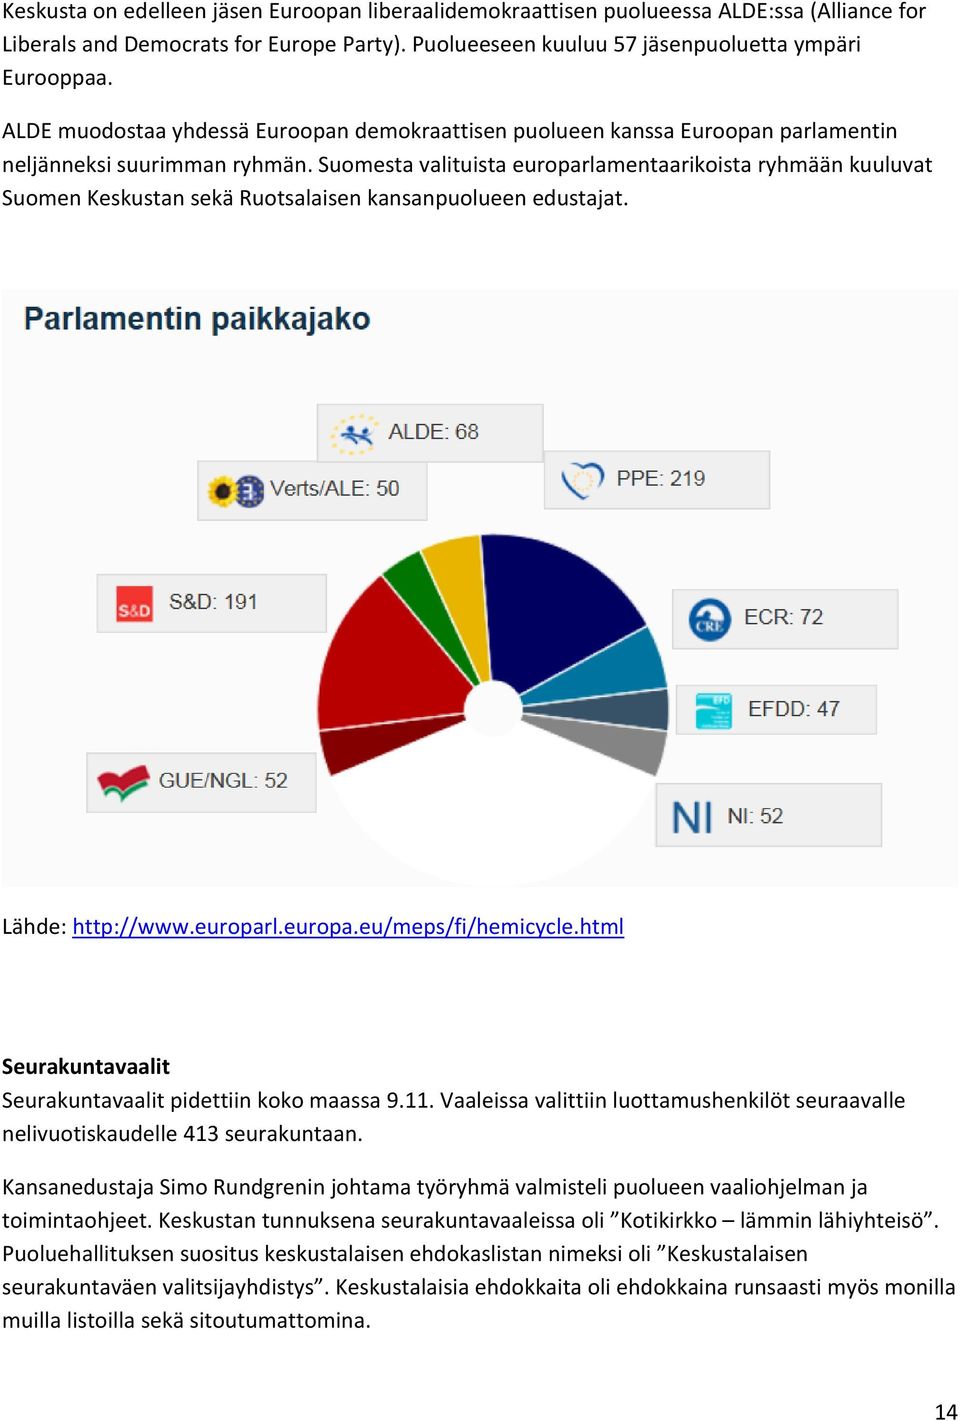 Suomesta valituista europarlamentaarikoista ryhmään kuuluvat Suomen Keskustan sekä Ruotsalaisen kansanpuolueen edustajat. Lähde: http://www.europarl.europa.eu/meps/fi/hemicycle.